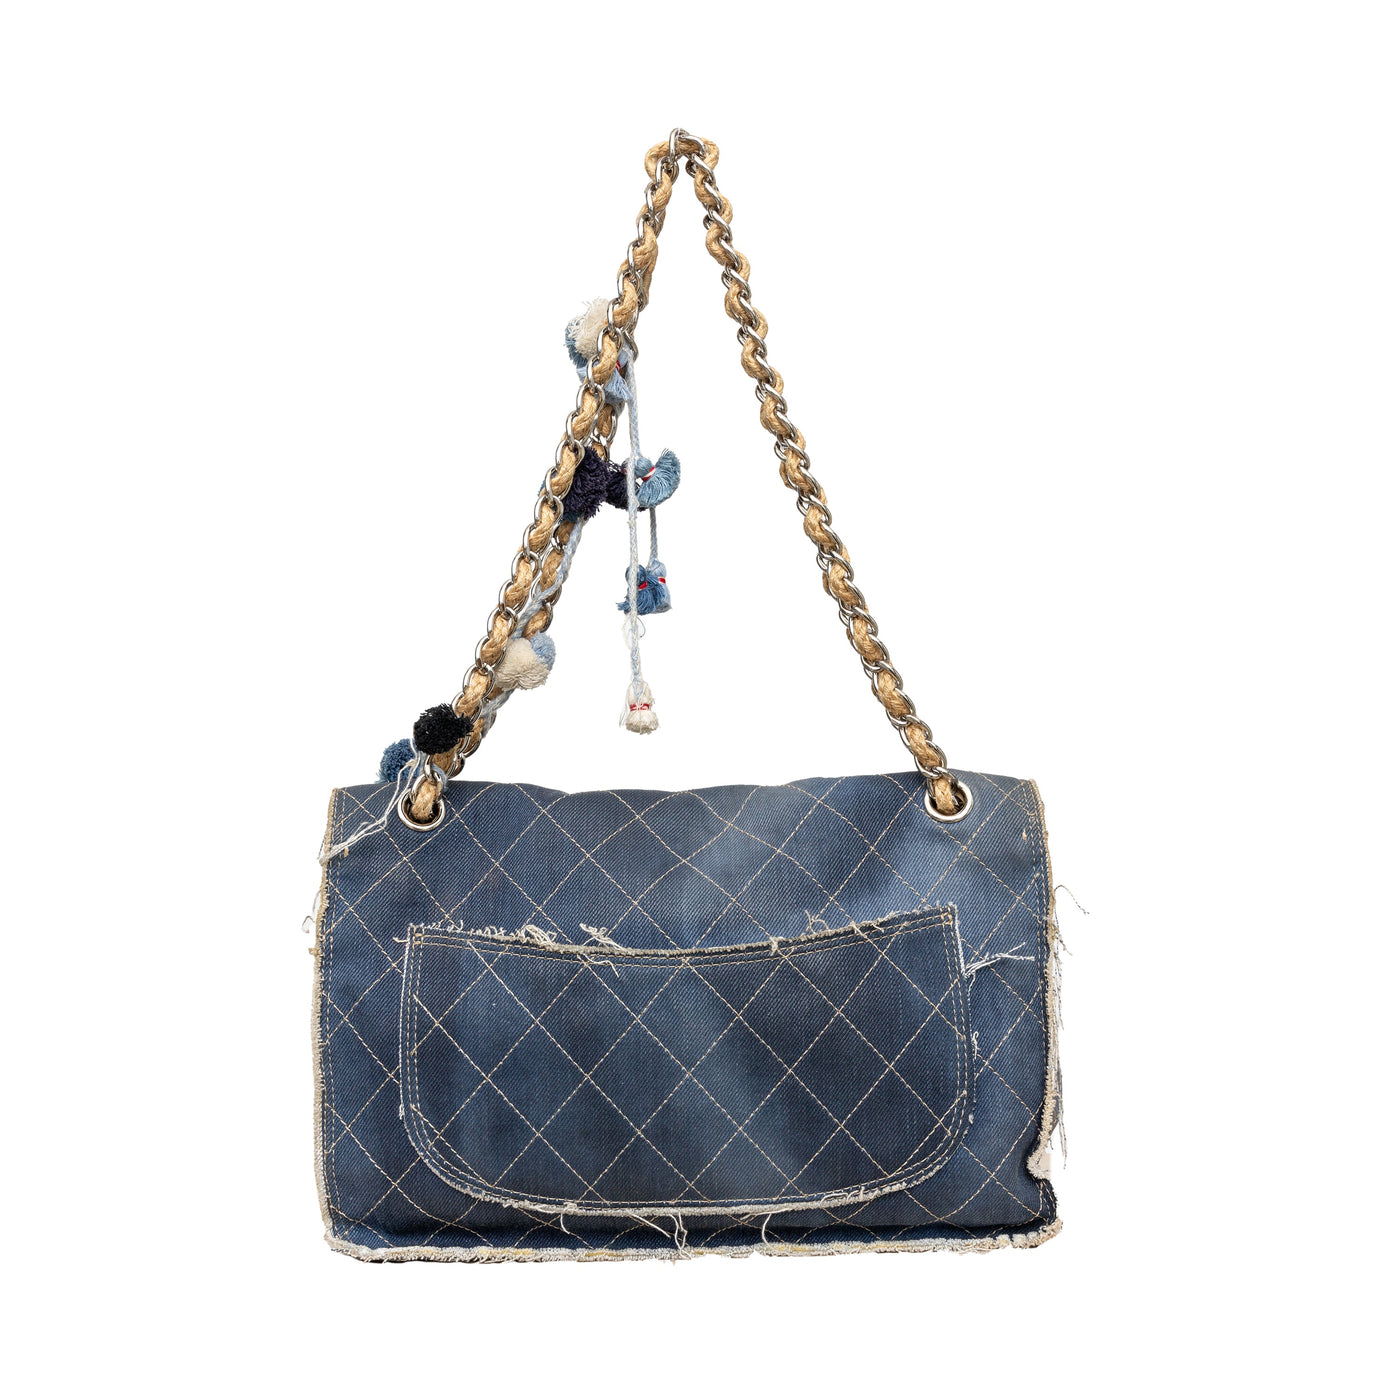 Secondhand Chanel Paris-Dubai Denim Flap Bag 